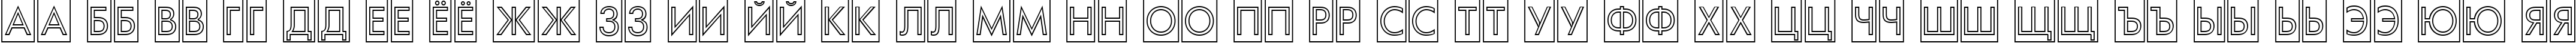 Пример написания русского алфавита шрифтом a_FuturaOrtoTitulCmOtl